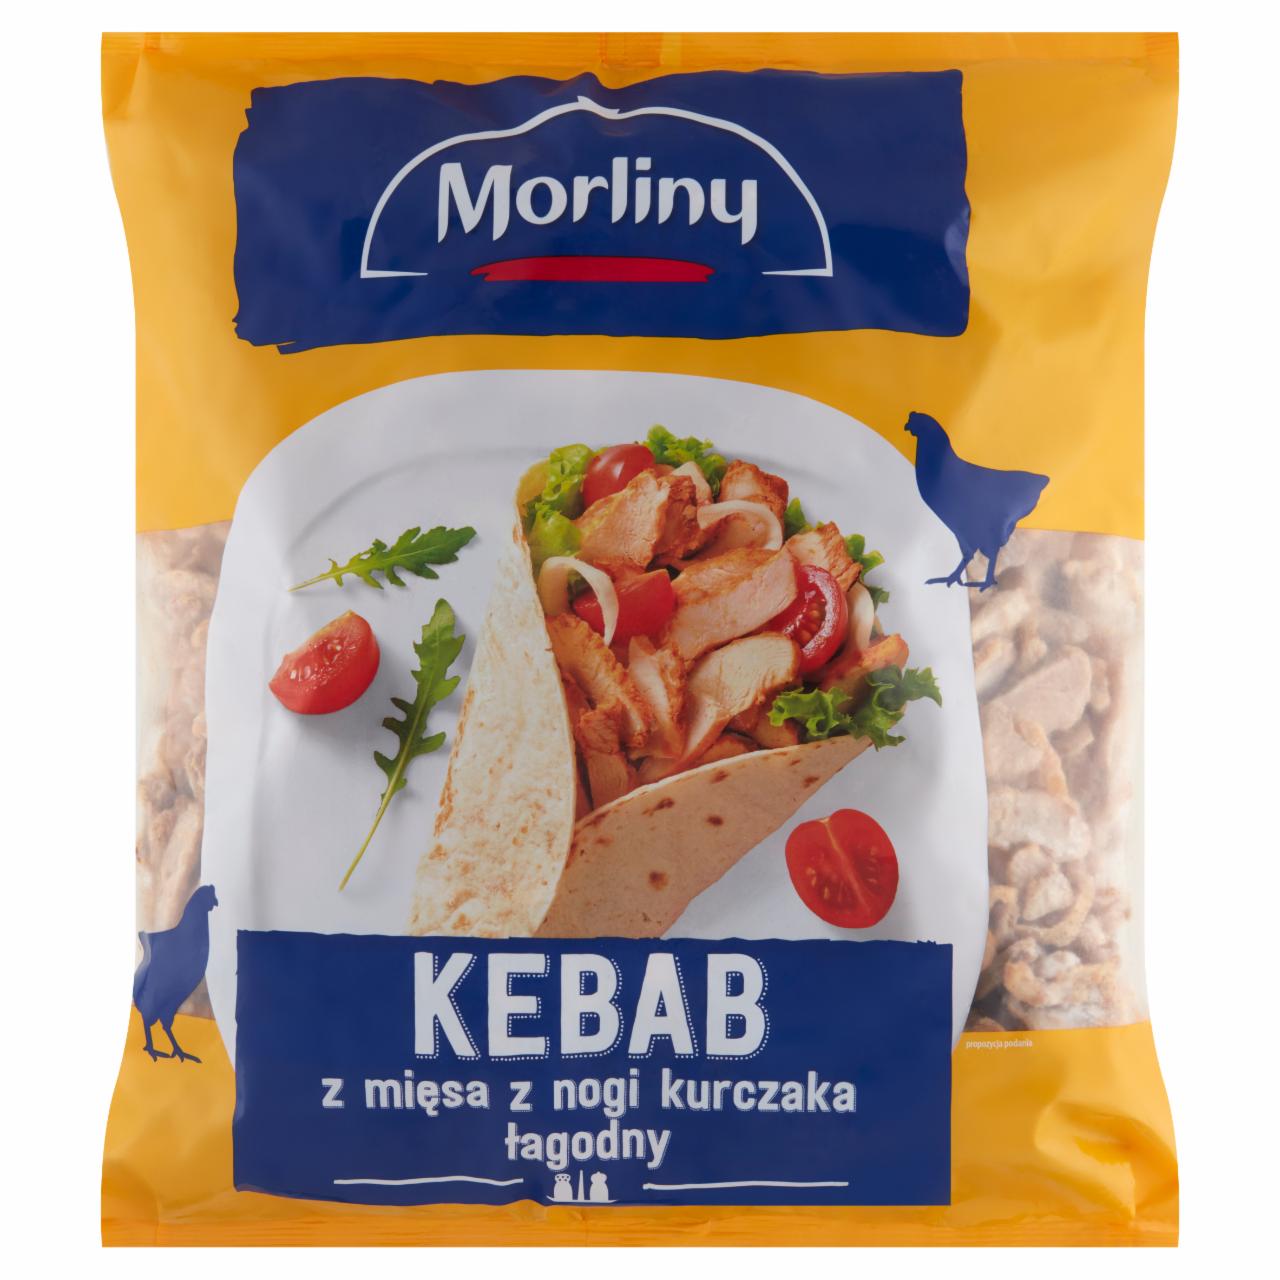 Zdjęcia - Morliny Kebab z mięsa z nogi kurczaka łagodny 2,5 kg